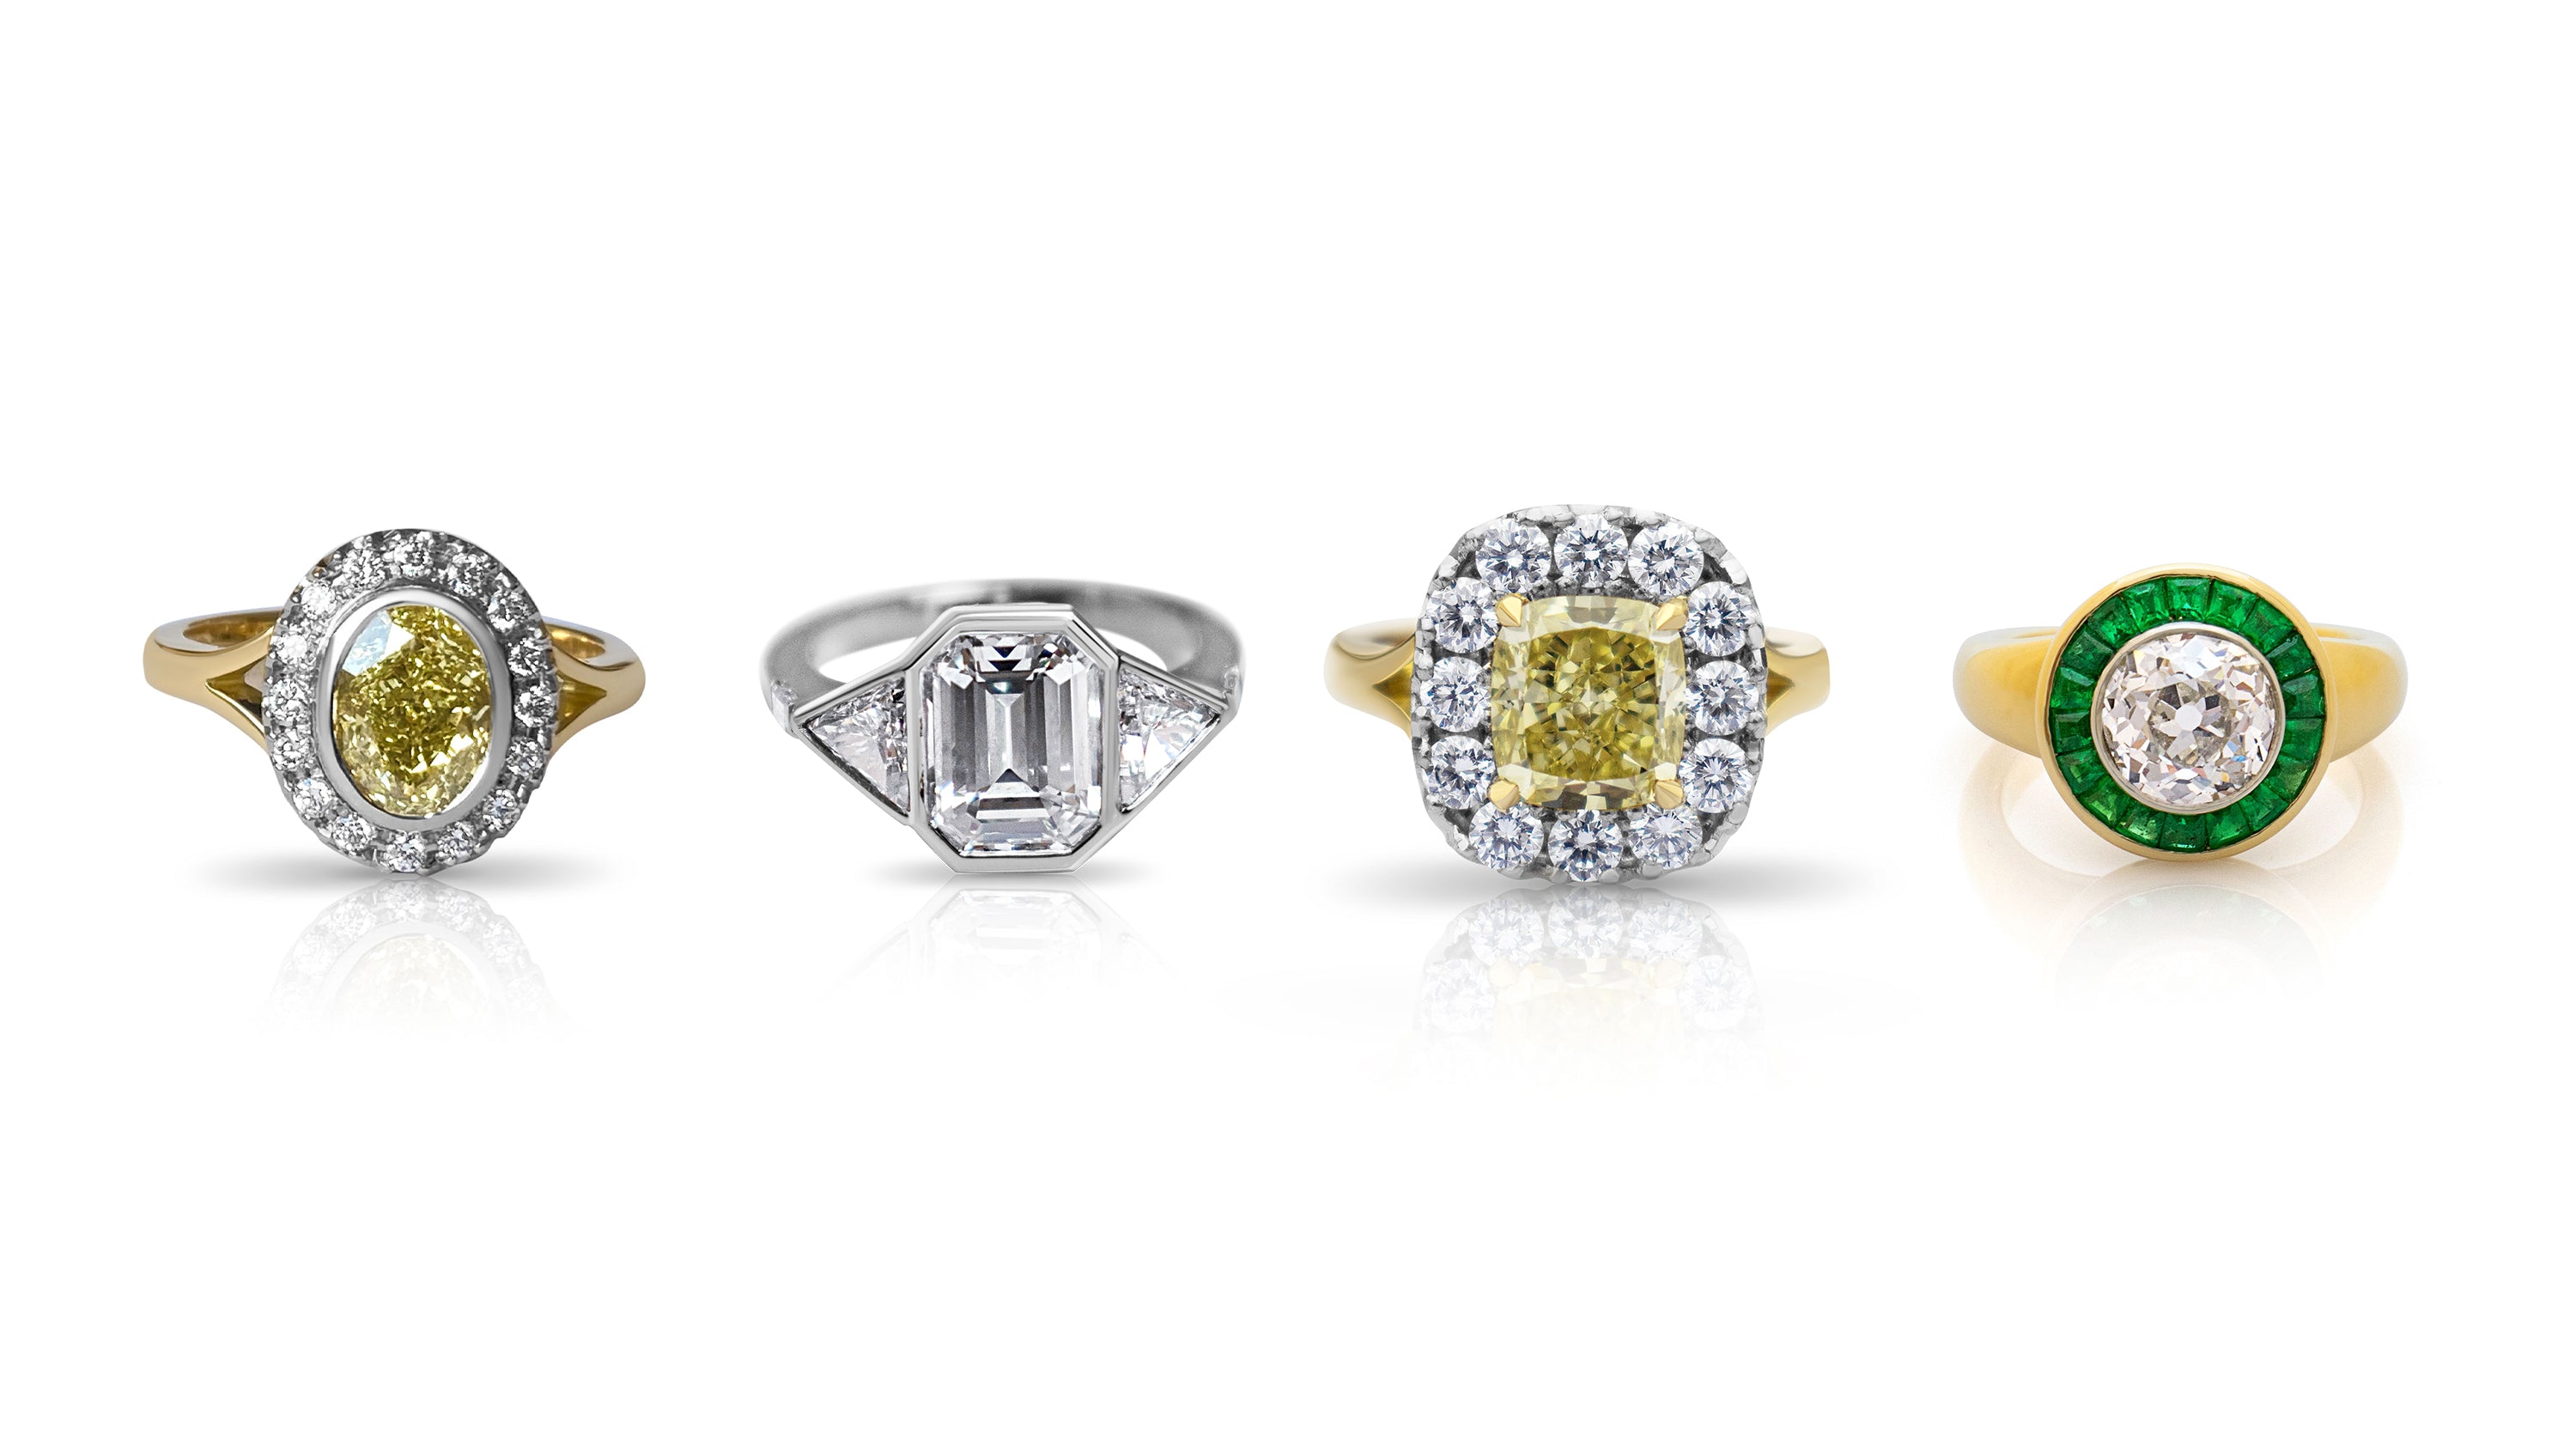 Aquamarine and diamond engagement ring. Bespoke engagement. 